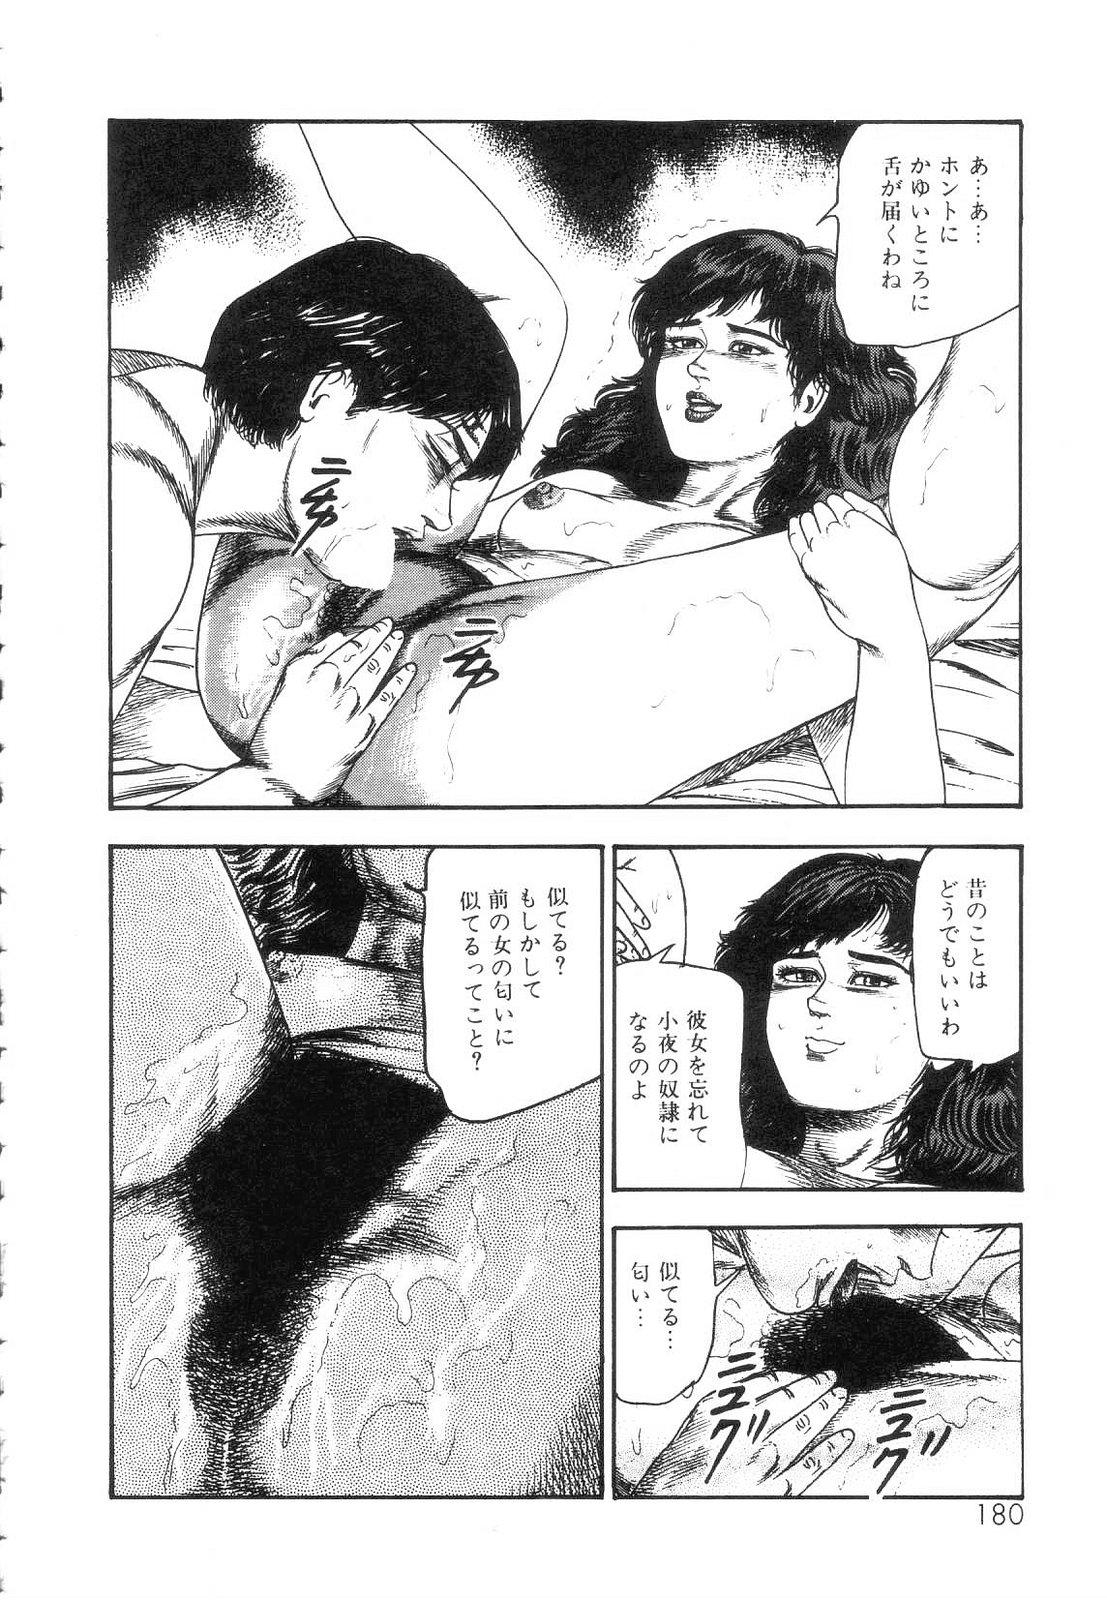 Shiro no Mokushiroku Vol. 5 - Ninshoujo Erika no Shou 181